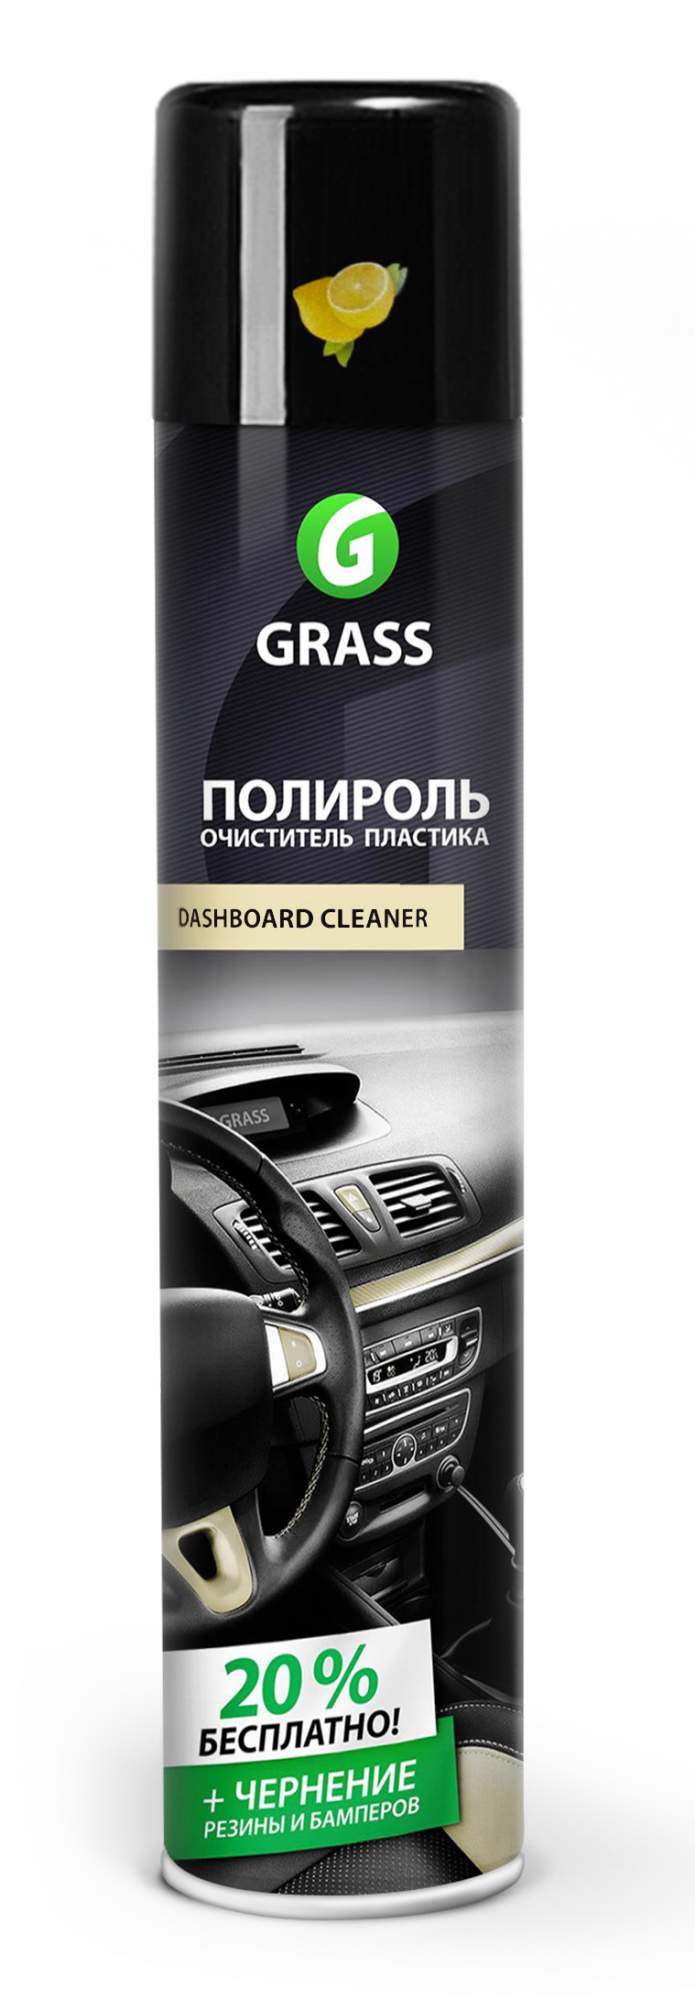 Полироль-Очиститель пластика Grass Dashboard Cleaner 120107-1 0,75 л лимон